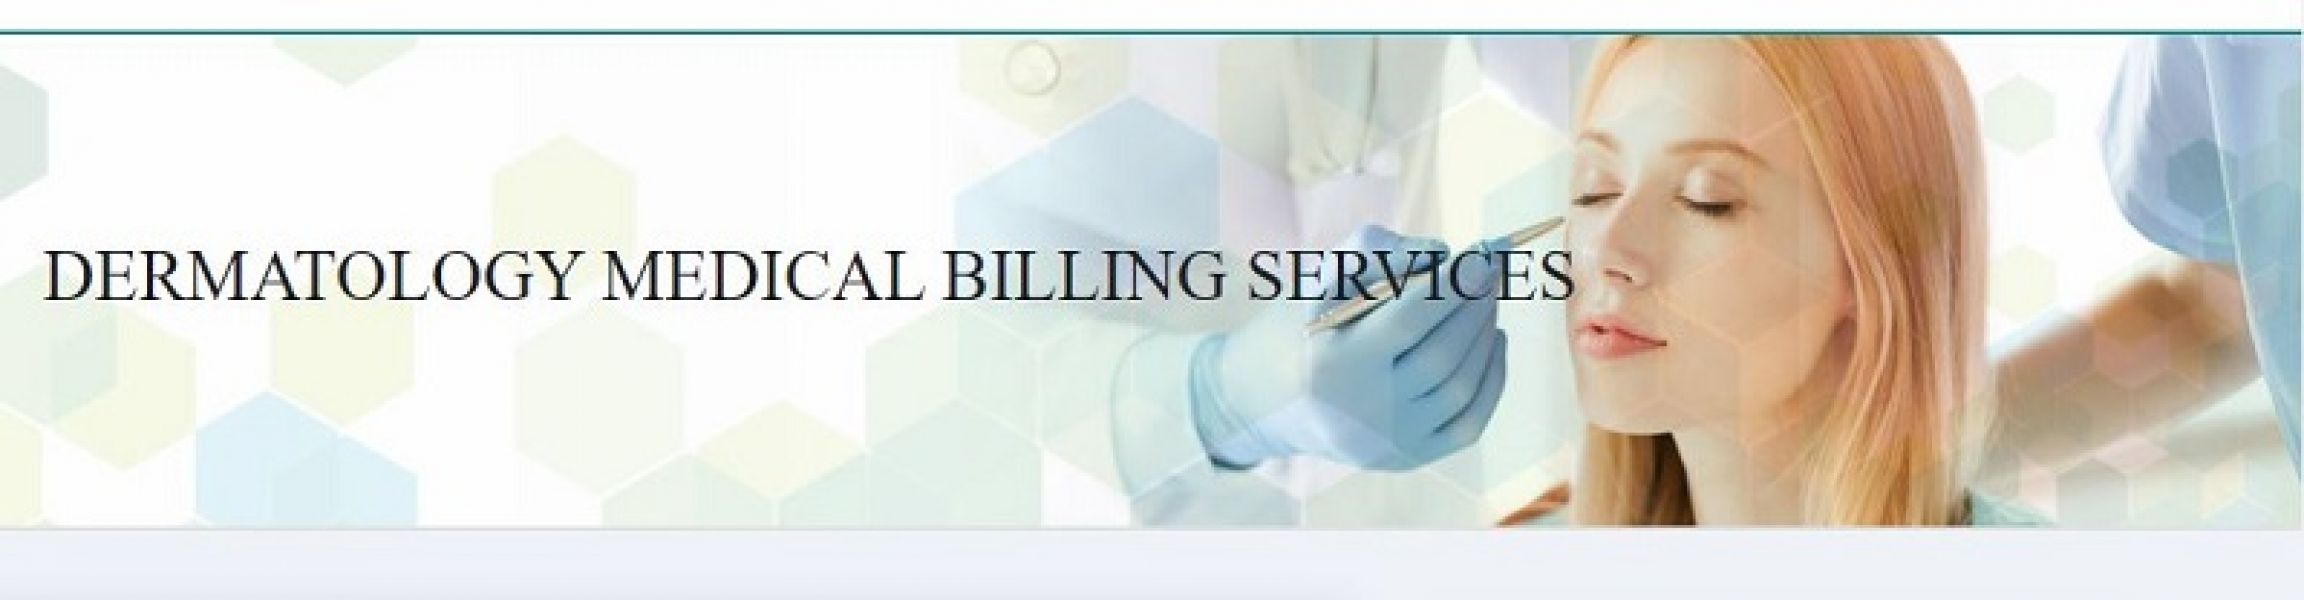 Dermatology medical billing services